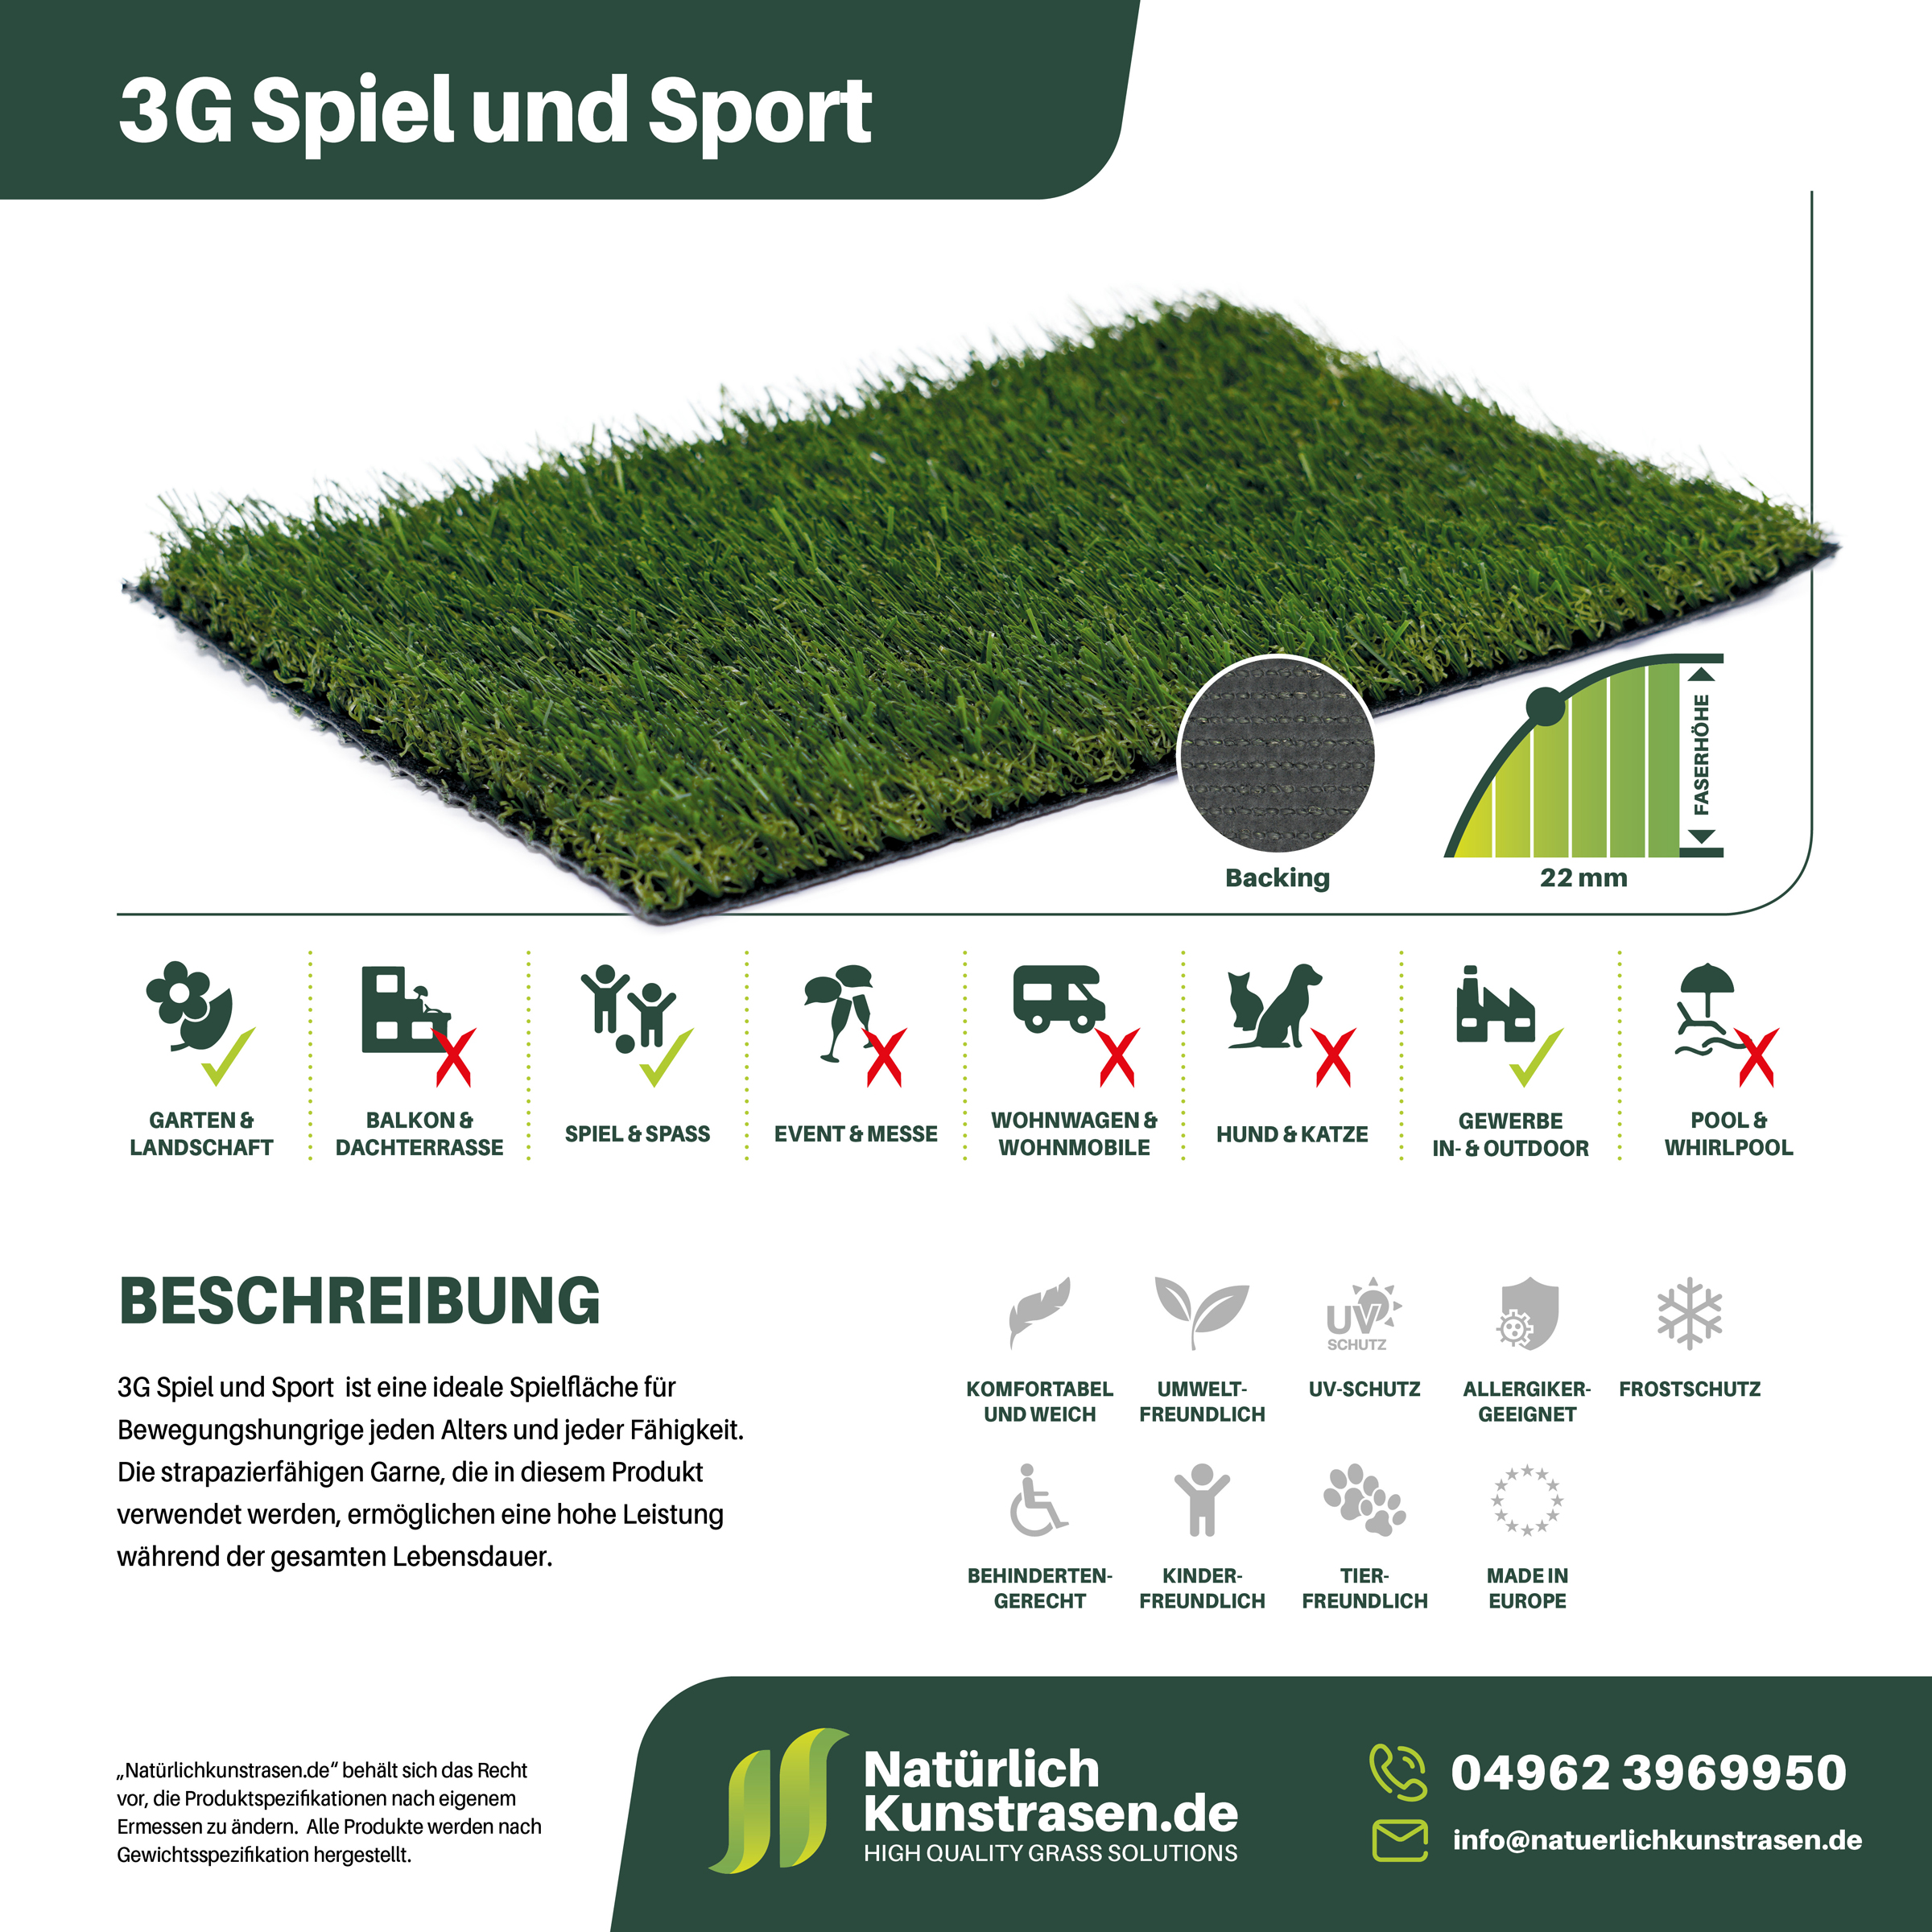 Kunstrasen-Produkte+Anwendungsgebiete+Name-3G-Spiel-und-Sport.jpg